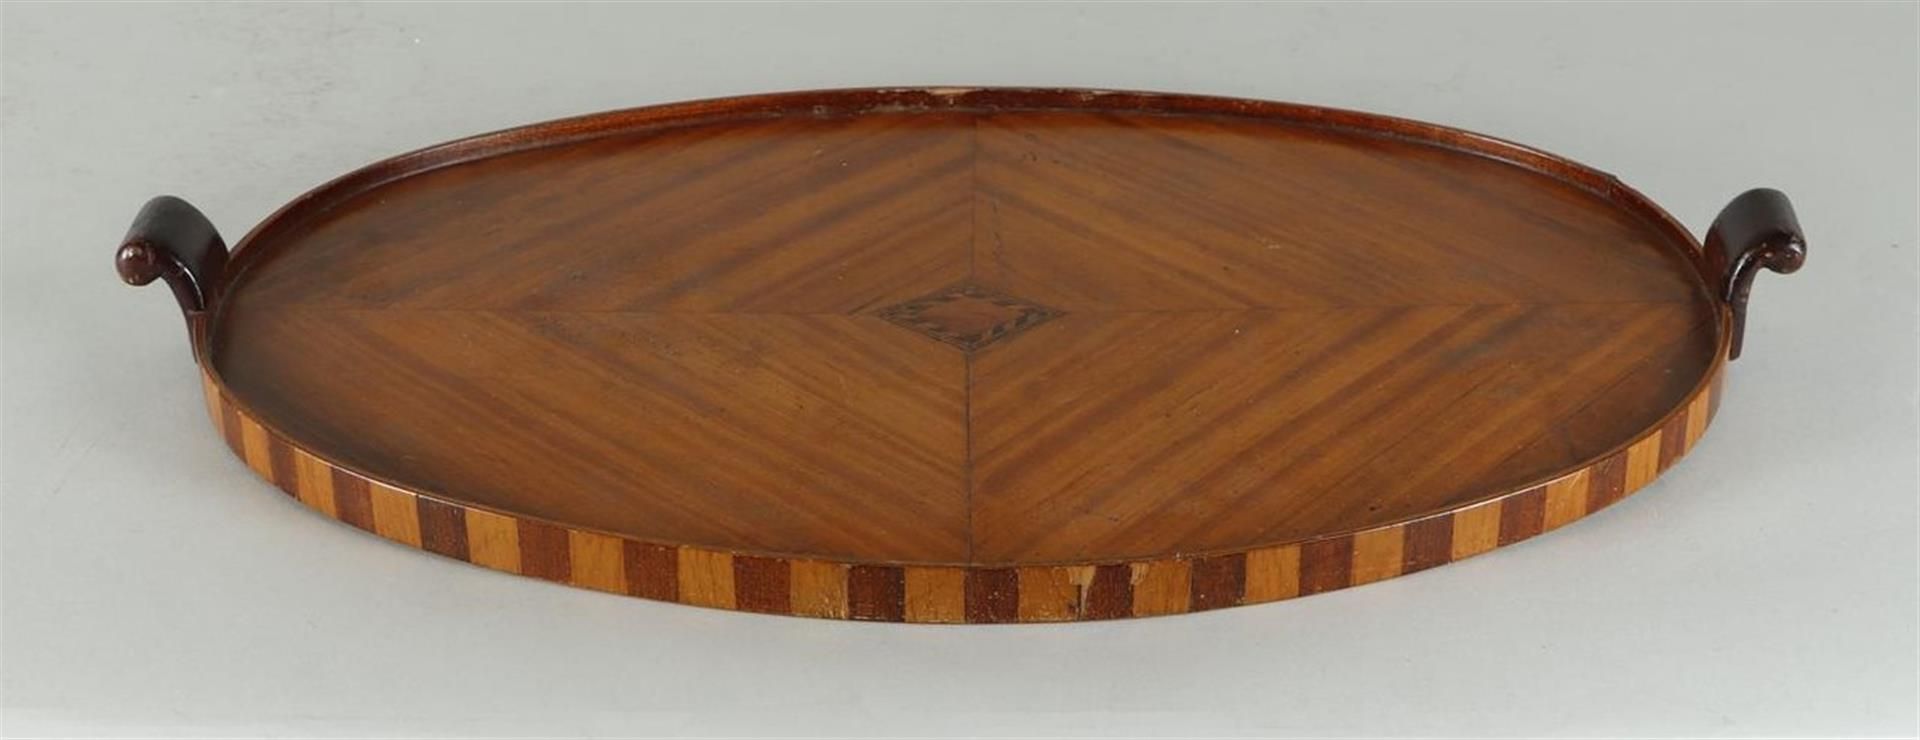 An English mahogany glued tray with intarsia, - Image 2 of 2